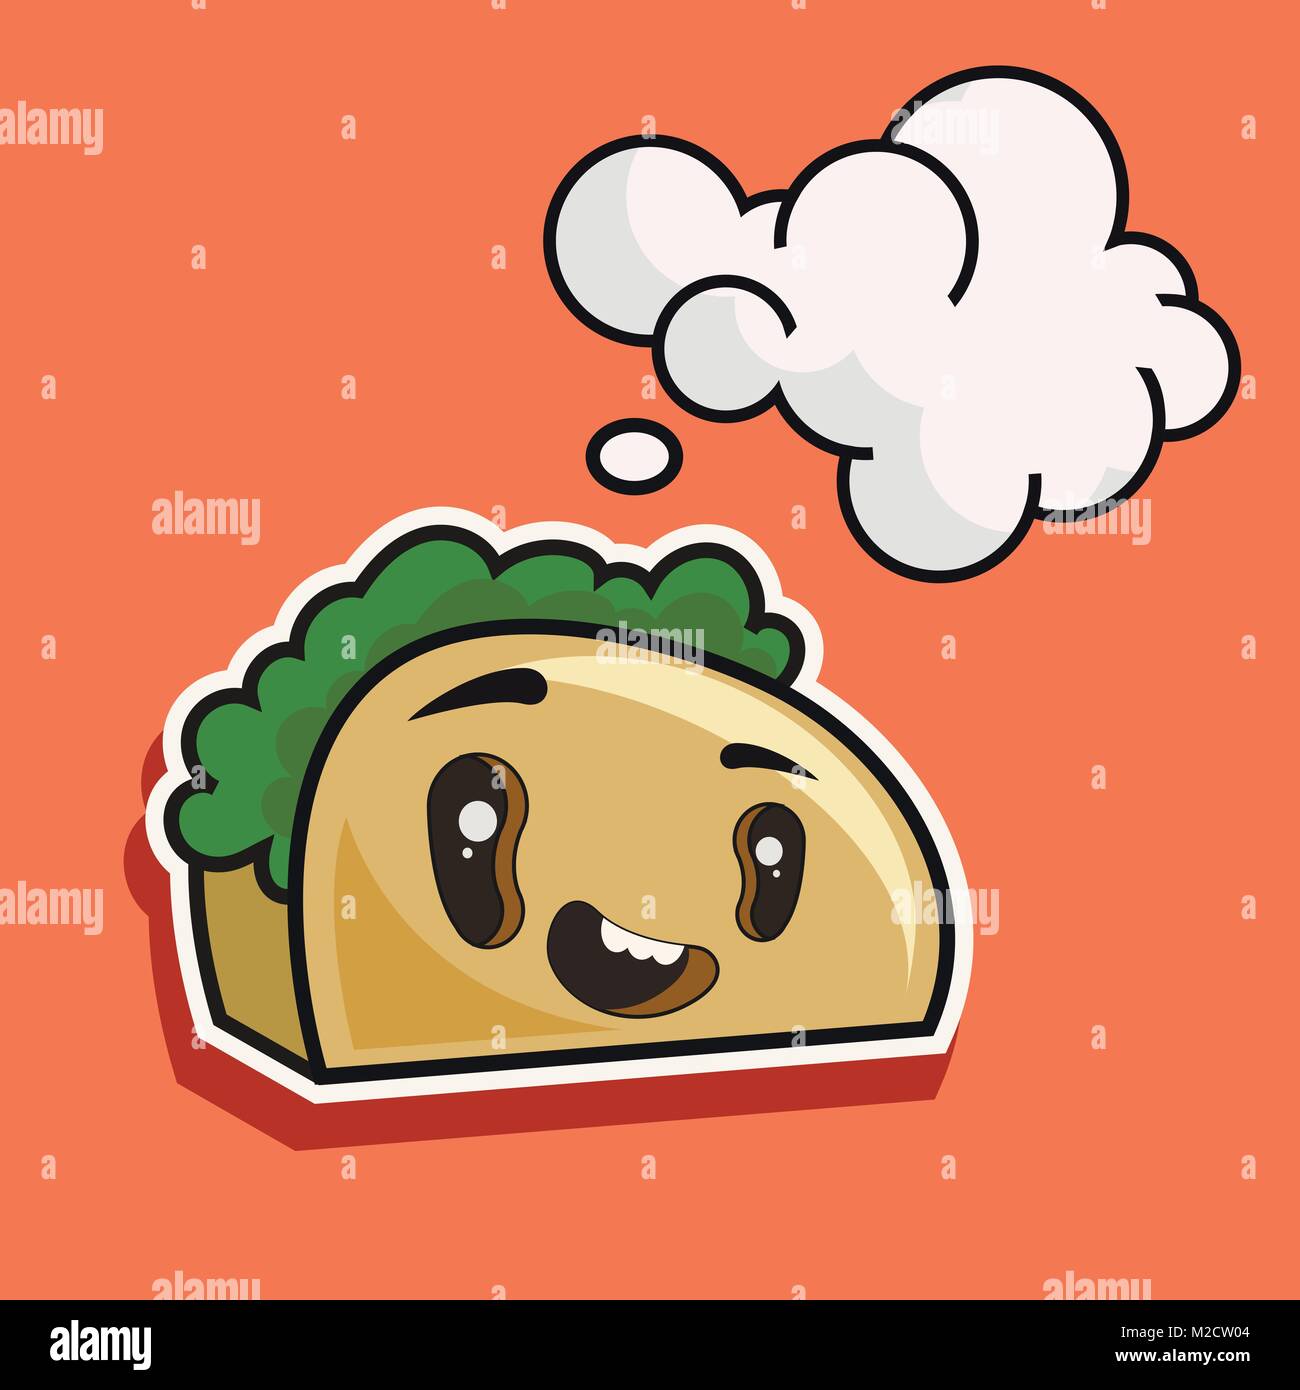 Cute Toastbrot Comicfigur auf weißem Hintergrund Vektor-illustration isoliert. Lustig positive und freundliche Bäckerei Konditorei emoticon Gesicht Symbol. Stock Vektor